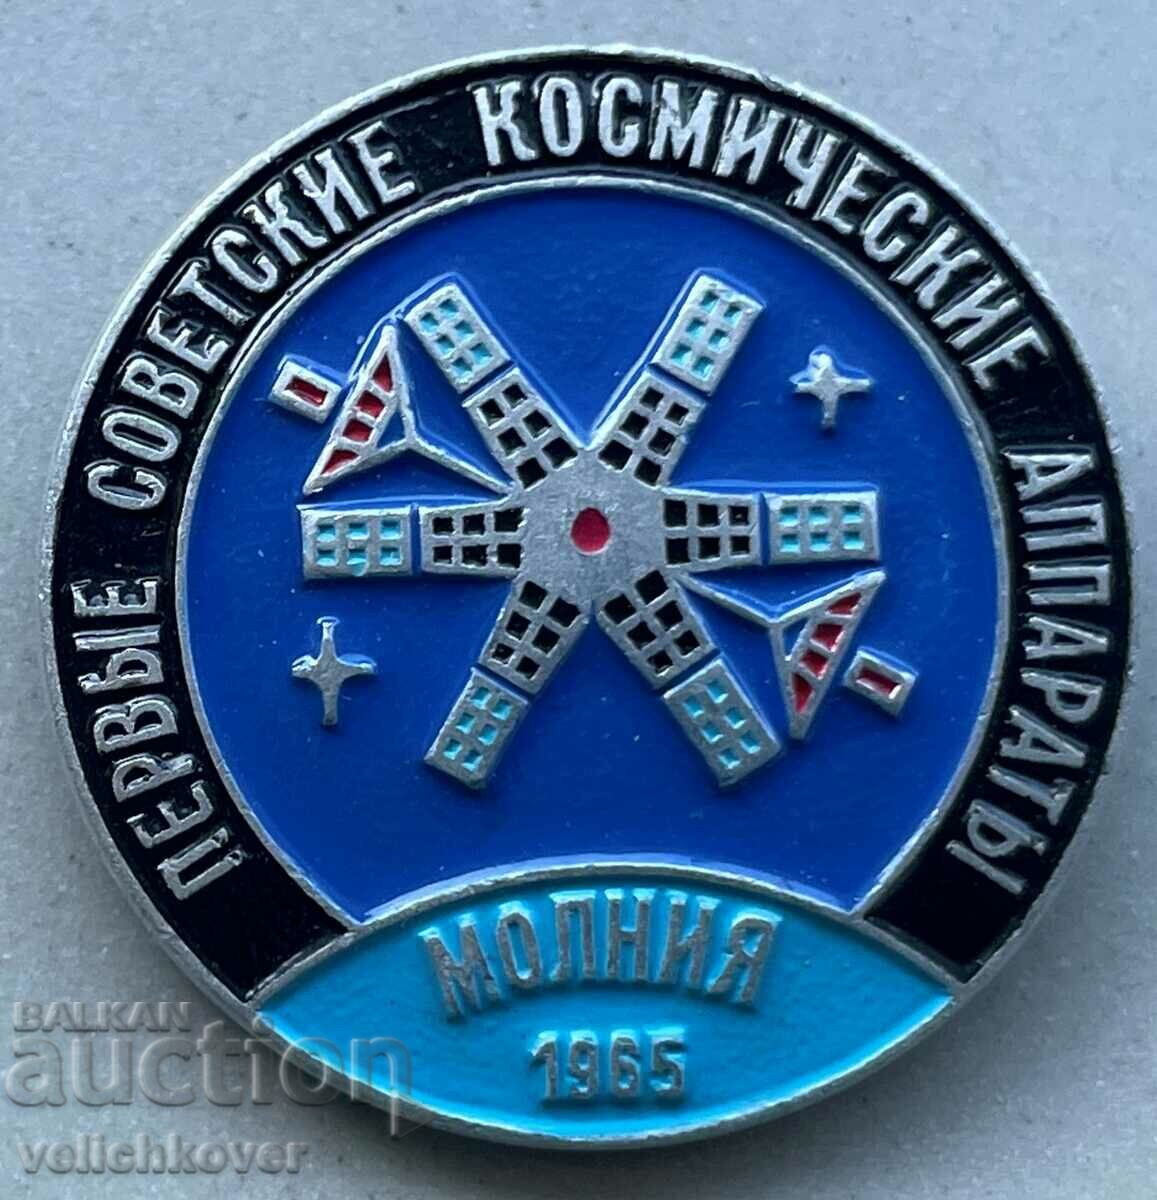 34005 Διαστημική πινακίδα ΕΣΣΔ Διαστημική συσκευή Molnia 1965.